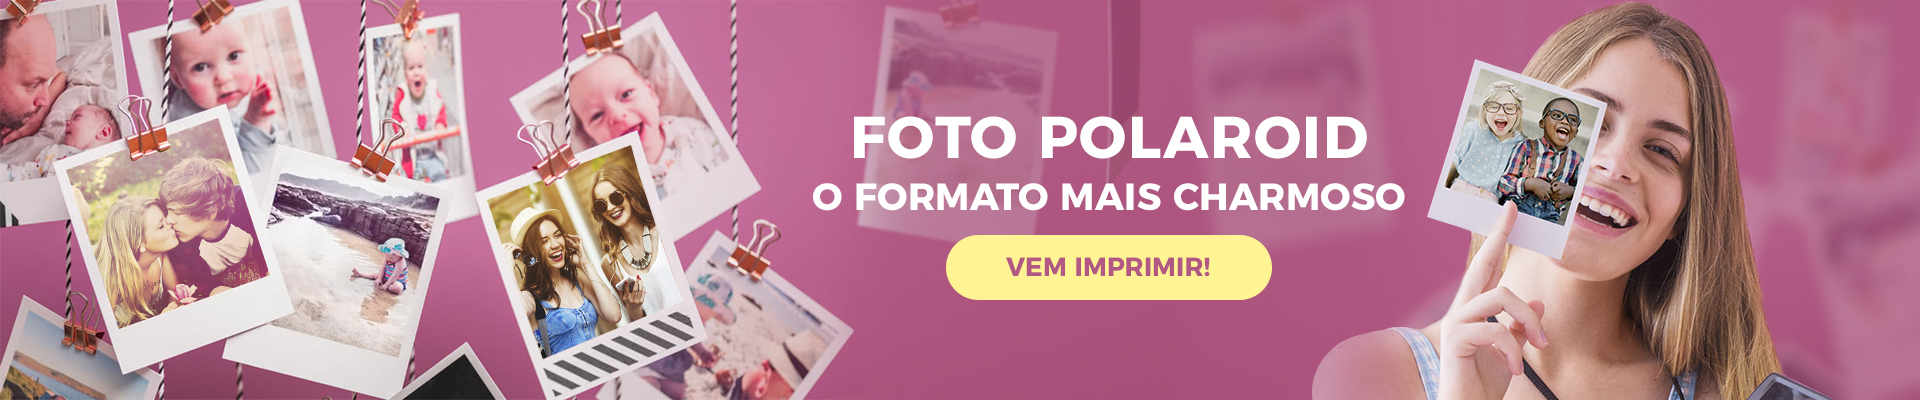 foto polaroid